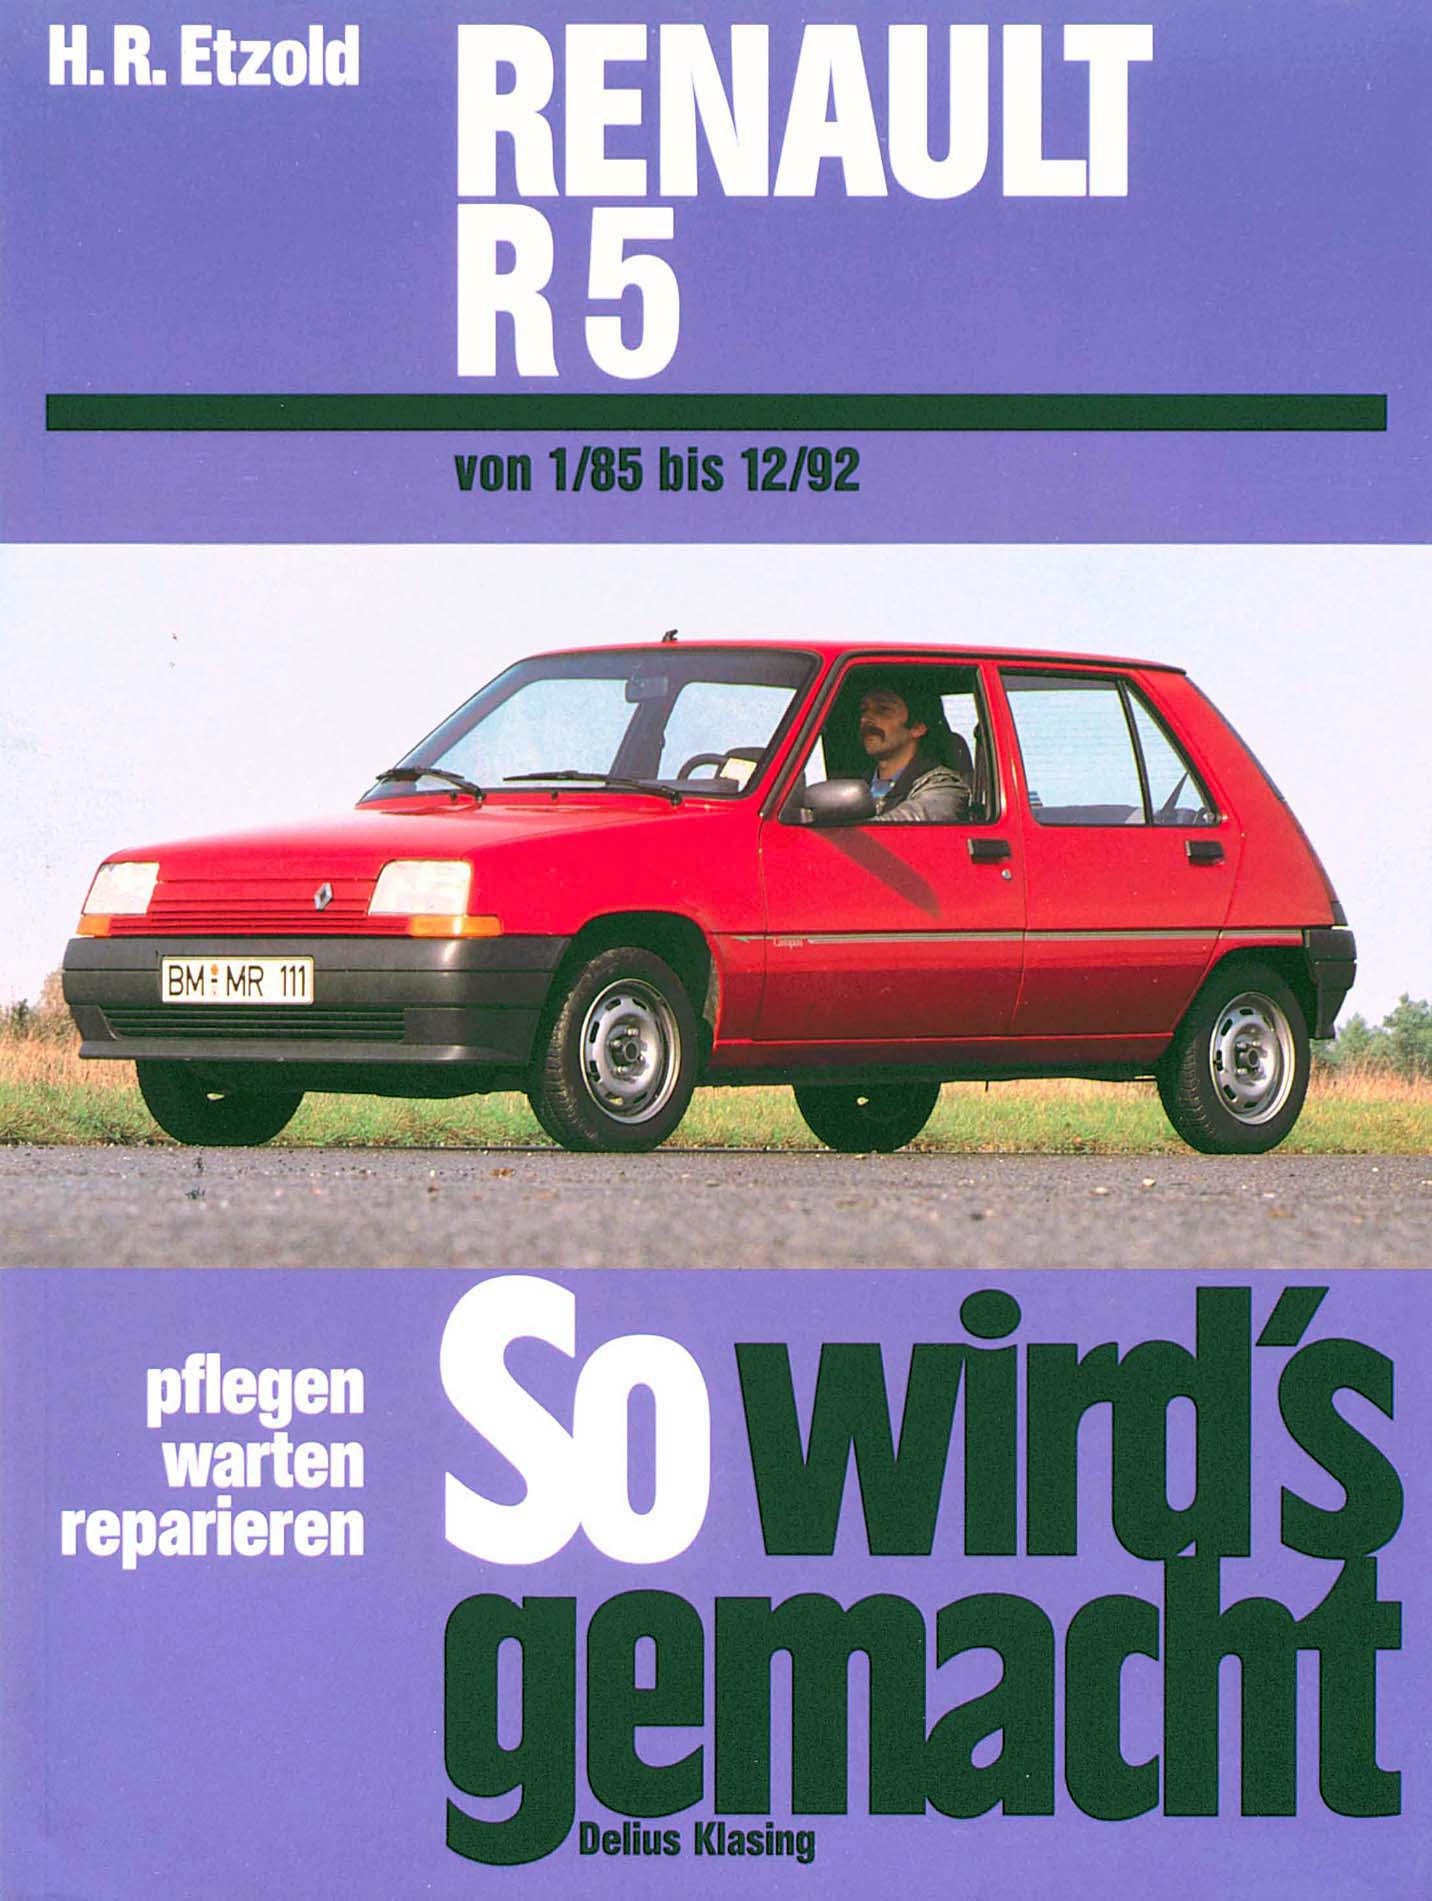 Das Twingoforum - Twingo 2 RS: Mieser Leerlauf, zu fett?